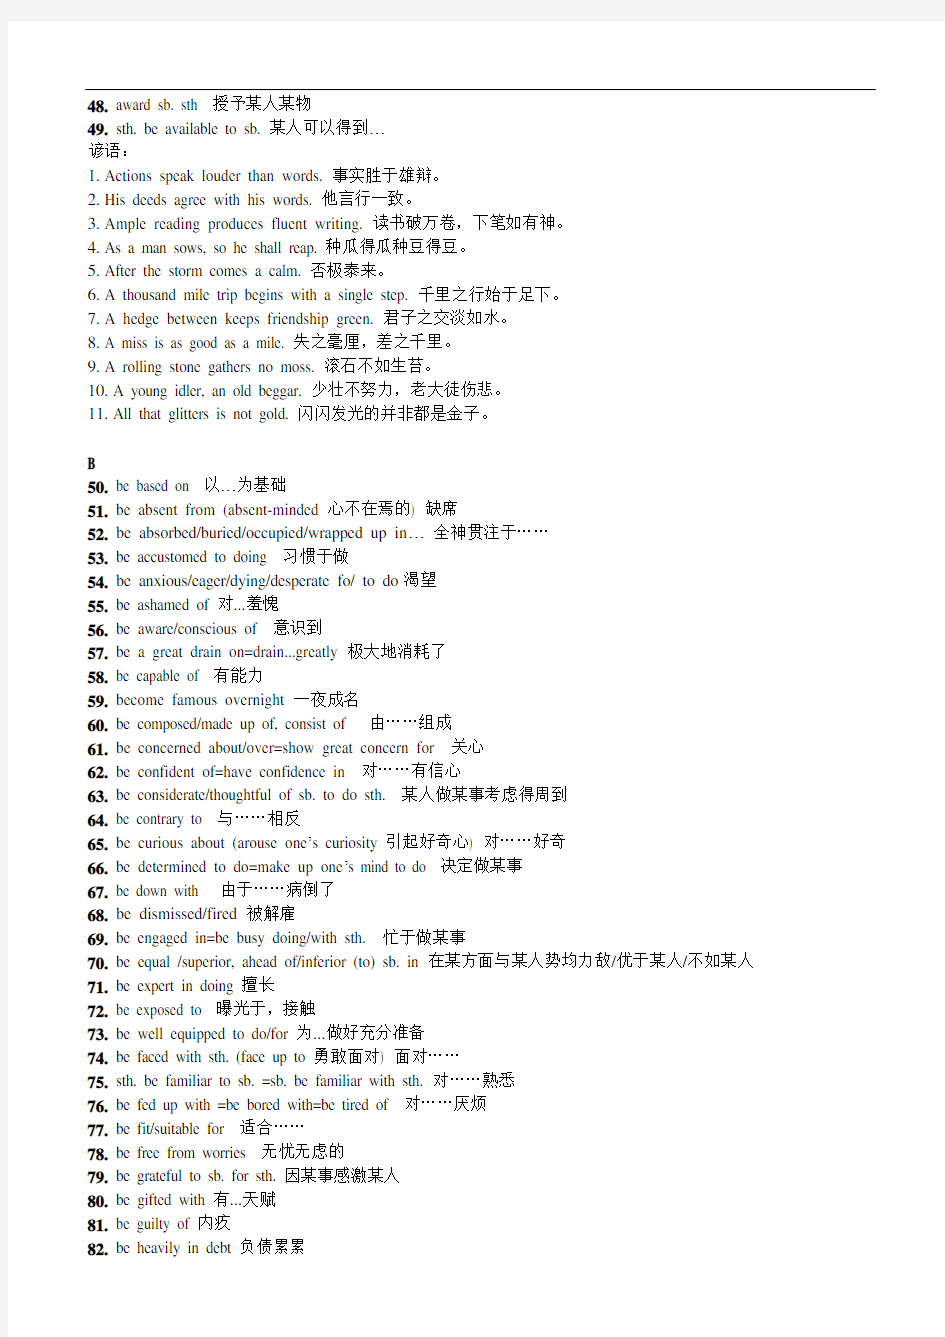 上海高考英语翻译中的高频词组总结